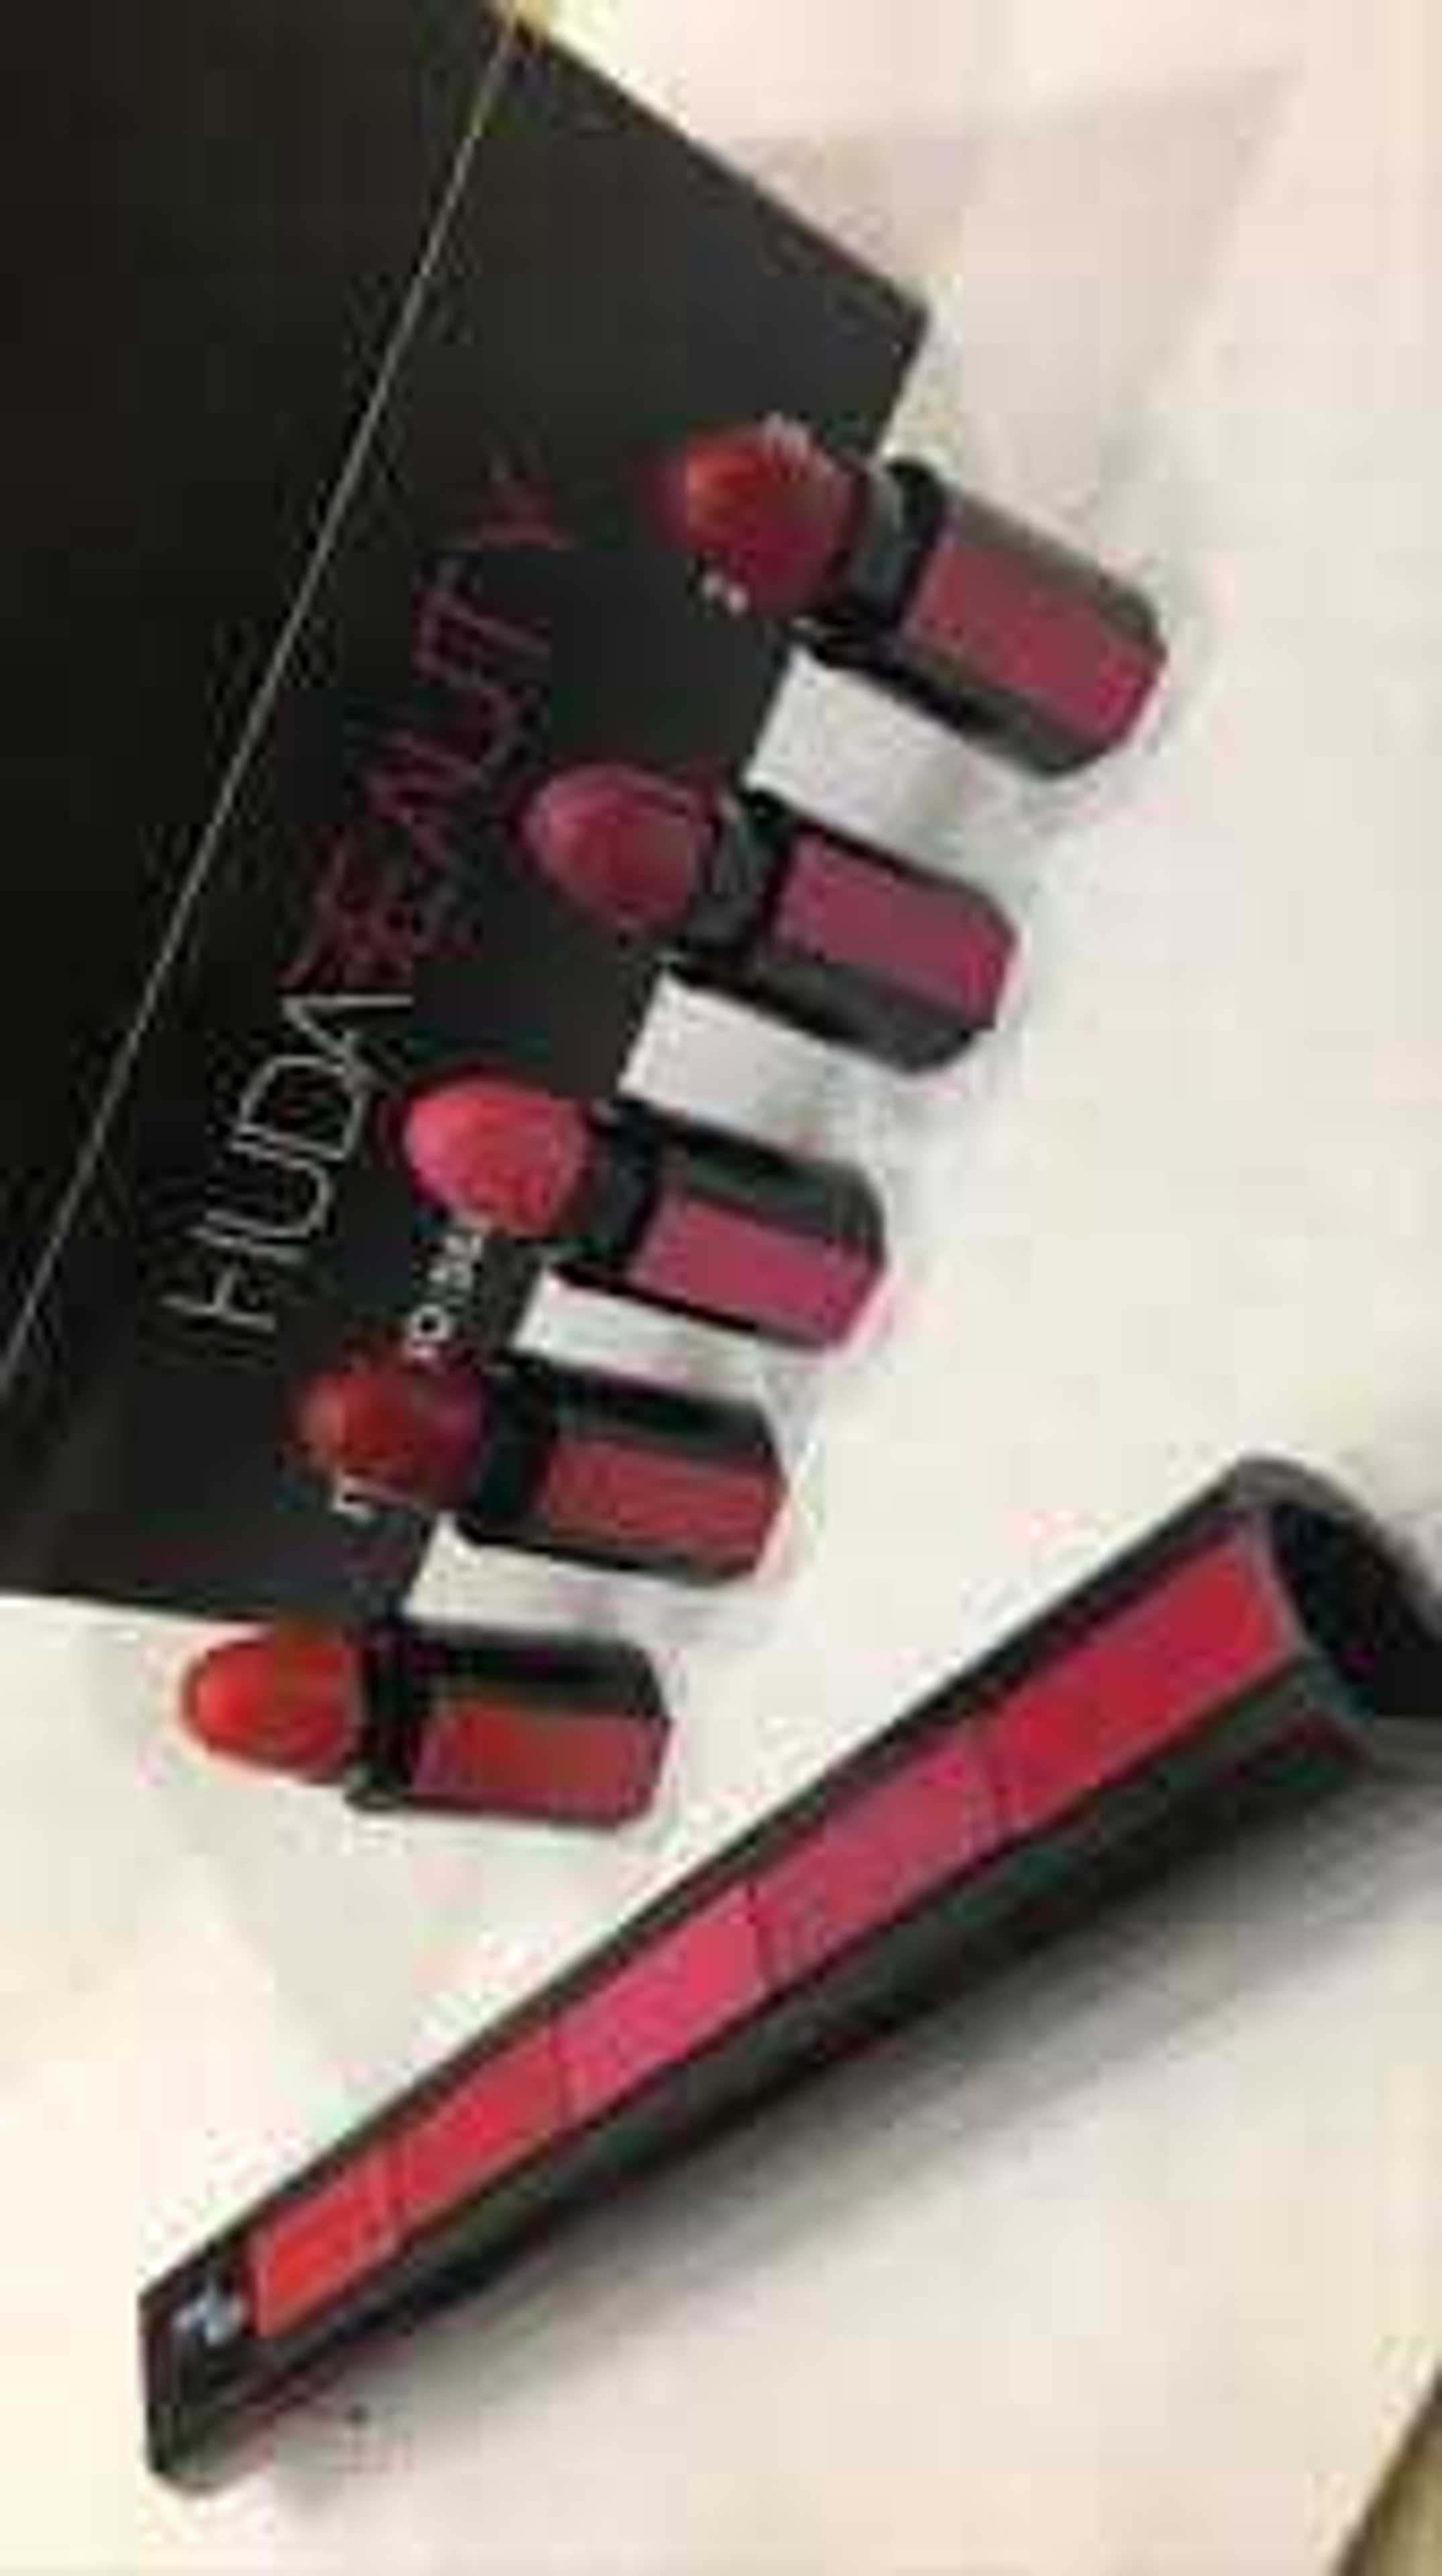 5 in 1 lipstick by Huda beauty 